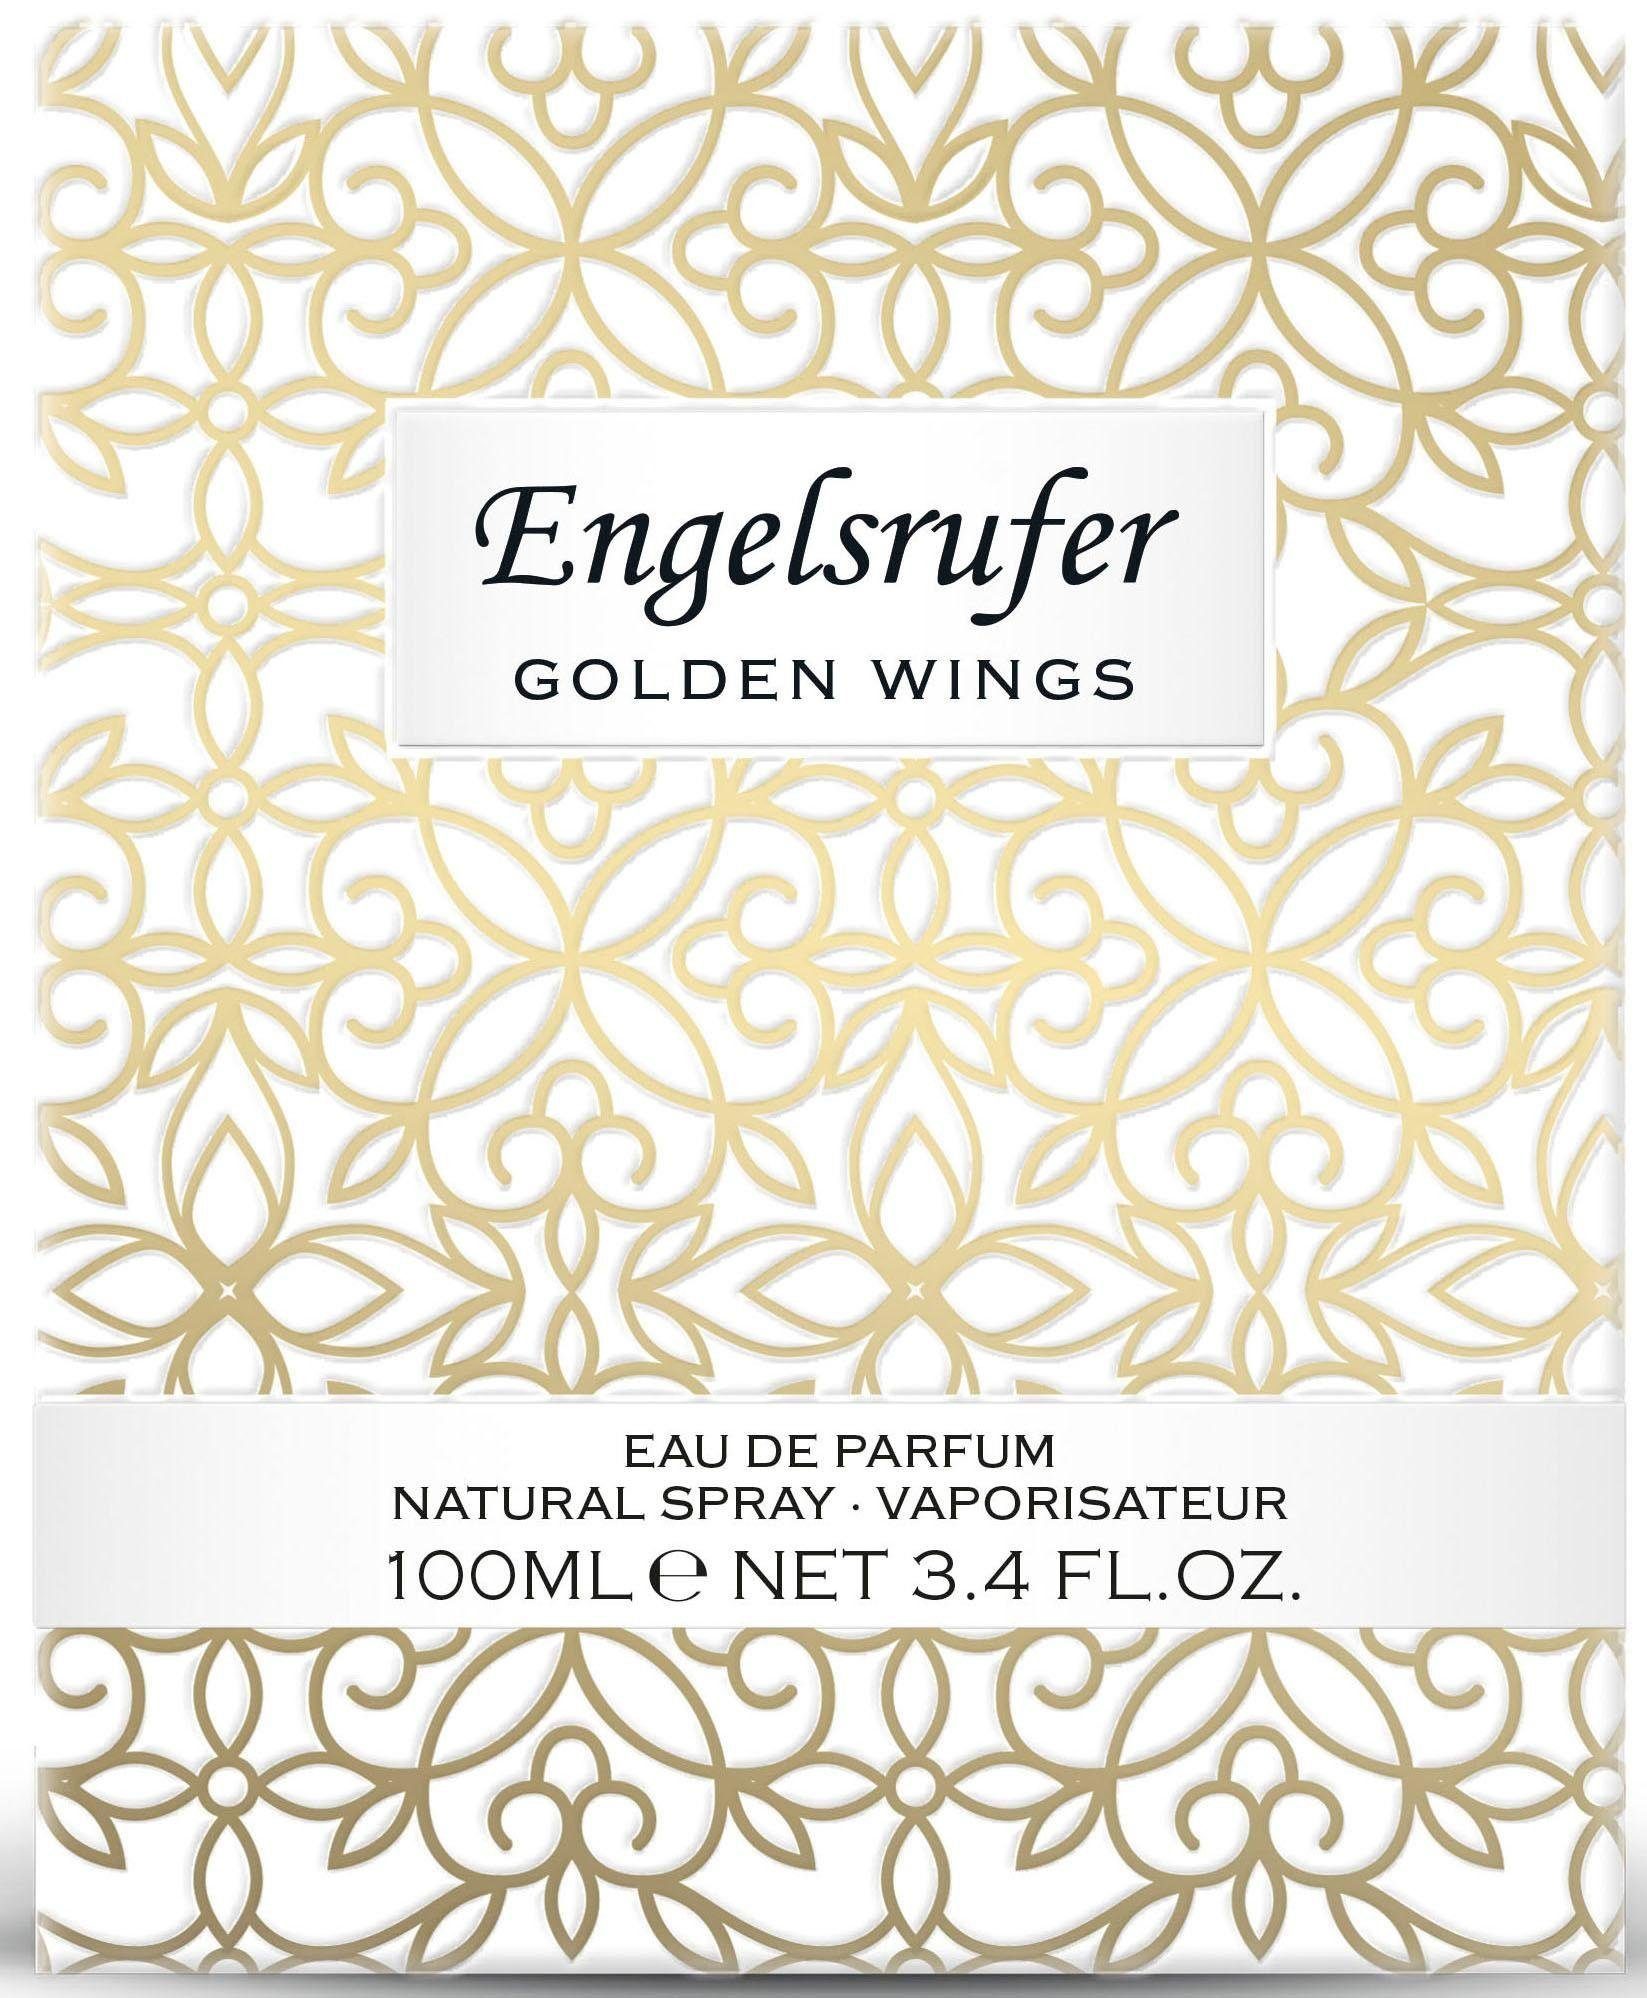 Wings Engelsrufer Eau de Parfum Golden